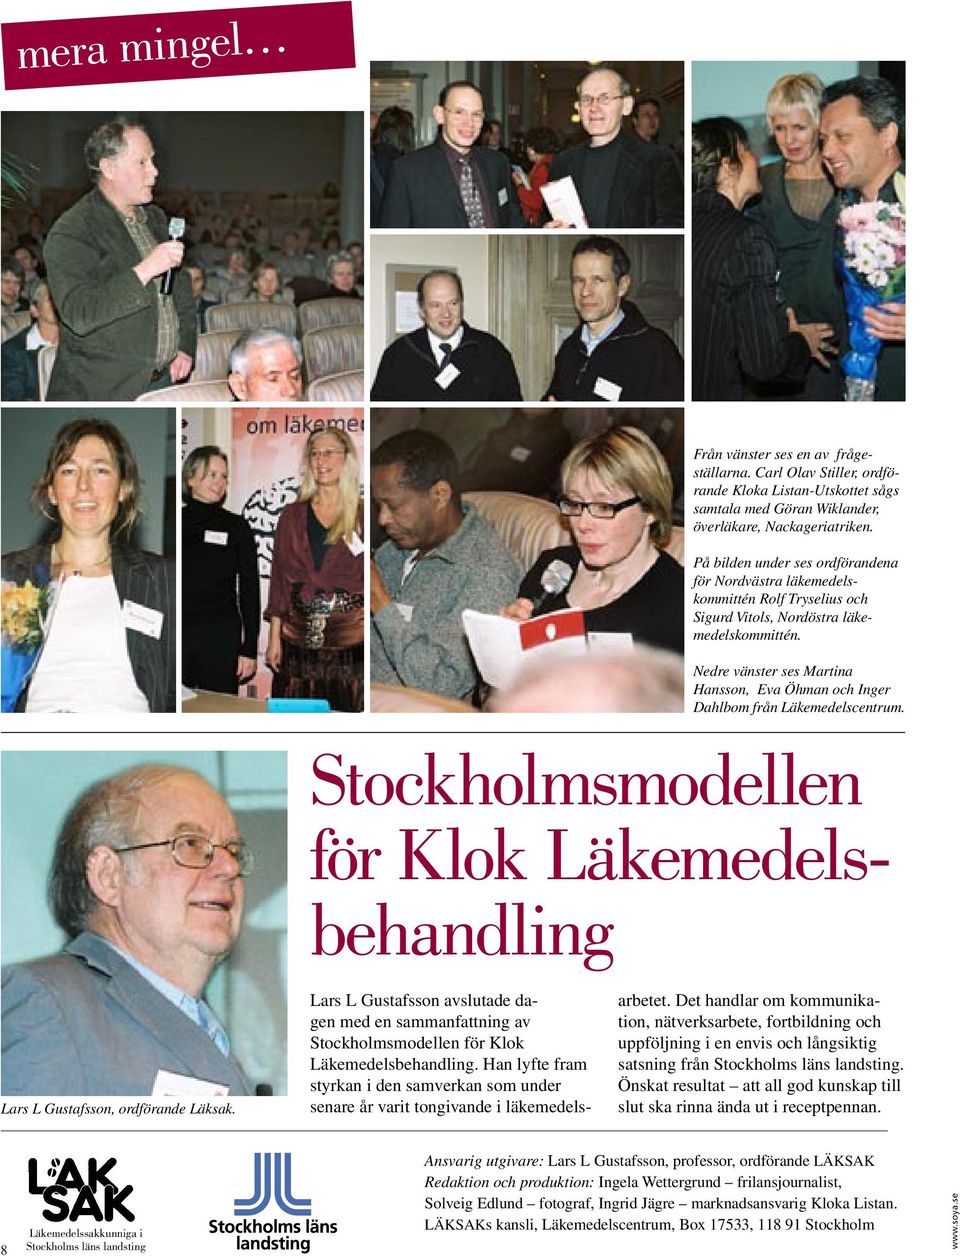 Nedre vänster ses Martina Hansson, Eva Öhman och Inger Dahlbom från Läkemedelscentrum. Stockholmsmodellen för Klok Läkemedelsbehandling Lars L Gustafsson, ordförande Läksak.